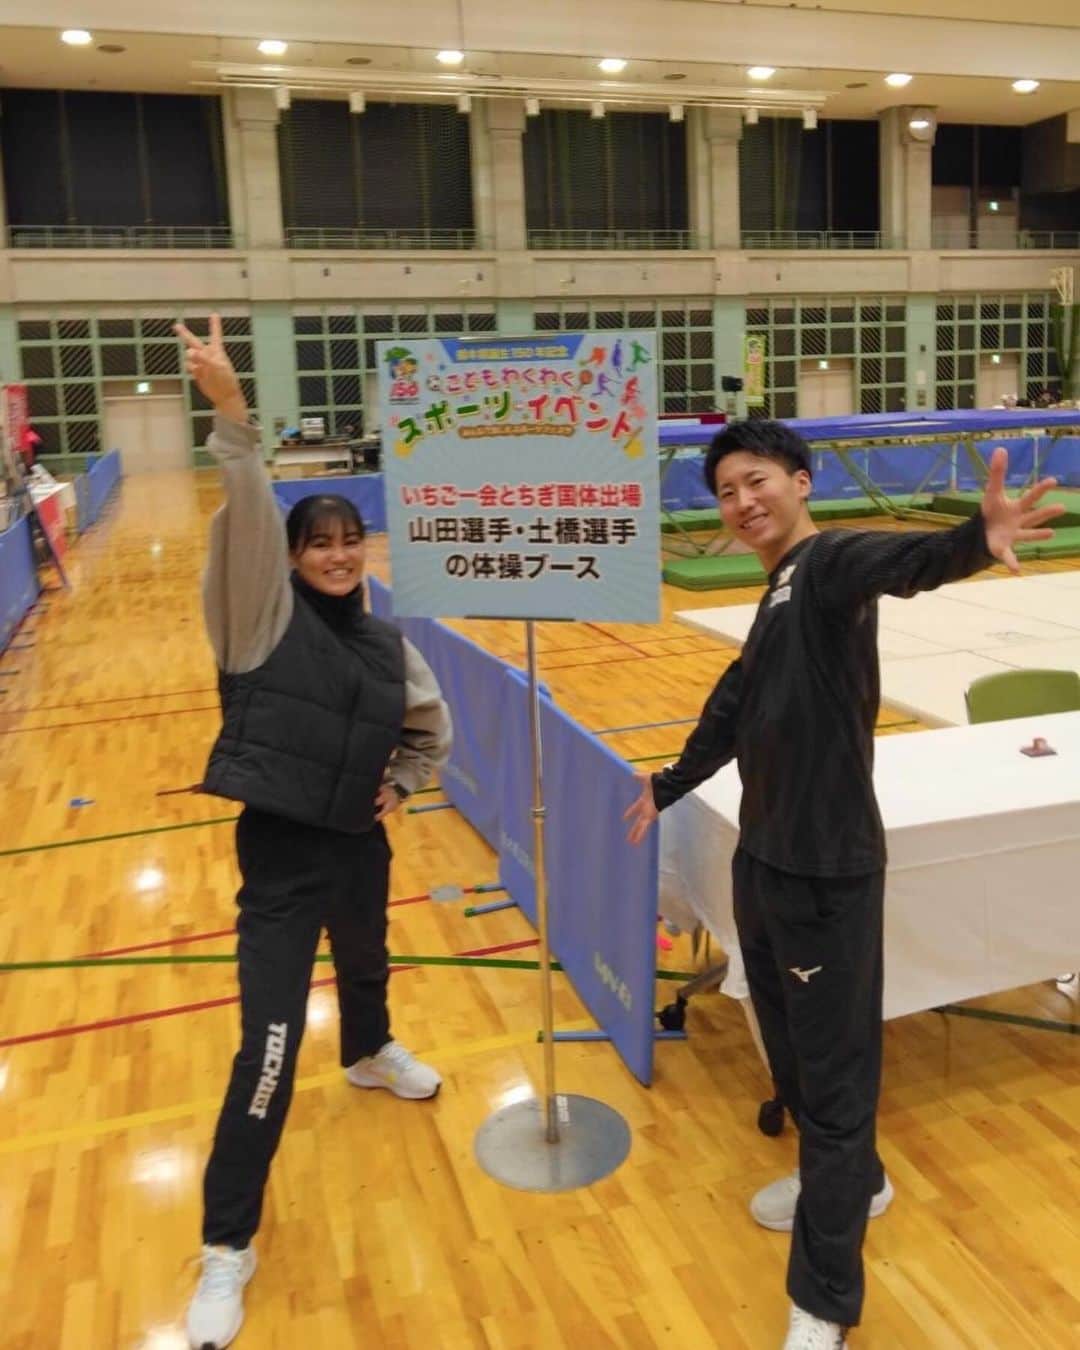 土橋ココのインスタグラム：「. 　　　　栃木県誕生150年記念 ⭐️こどもわくわくスポーツイベント⭐️ 　　　　in 栃木県立県北体育館  前回の県南体育館に続きたくさんの子ども達が 体操教室に参加してくれました🤸 子ども達と一緒に大好きな体操をすることができ、 スポーツの魅力や楽しさが伝わっていると嬉しいです🩵  イベント開催にあたりましてご尽力くださいました とちぎテレビ様、関係者の皆様に感謝申し上げます😌 ありがとうございました✨  写真撮ってくれた学生さんありがとうございました😌  #栃木県誕生150年記念  #子どもわくわくスポーツイベント #県北体育館 #体操#トランポリン #スポーツ#魅力#楽しさ」